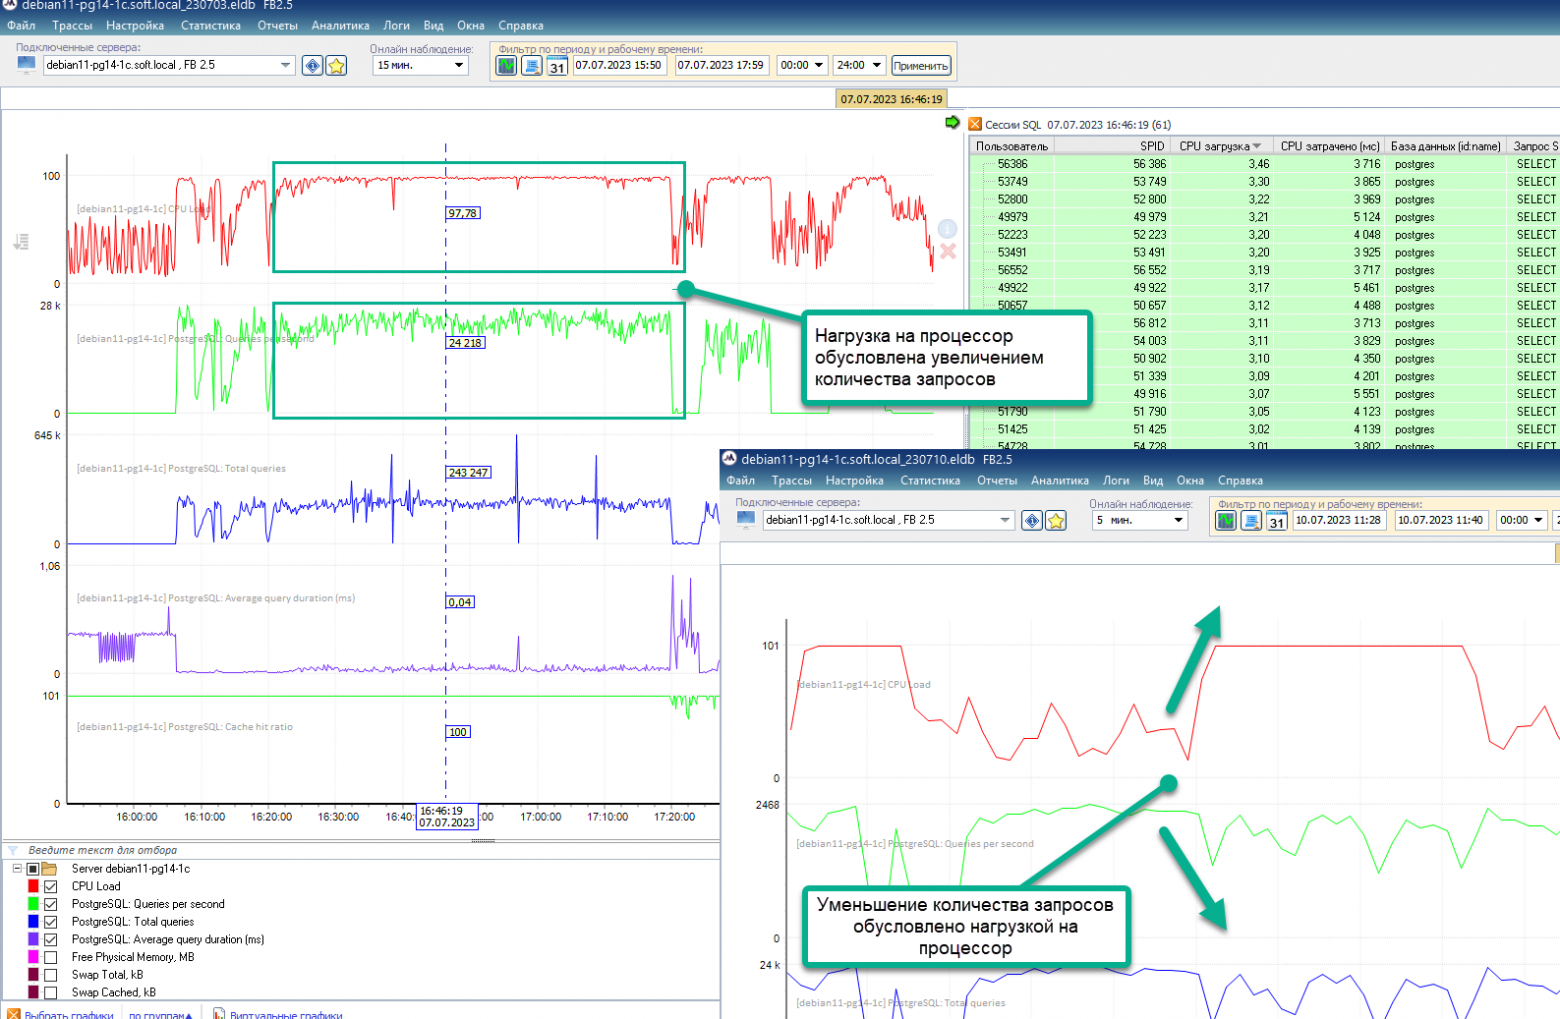 Мониторинг PostgreSQL. Новые возможности анализа производительности 1С и других систем. Часть 1: счётчики5